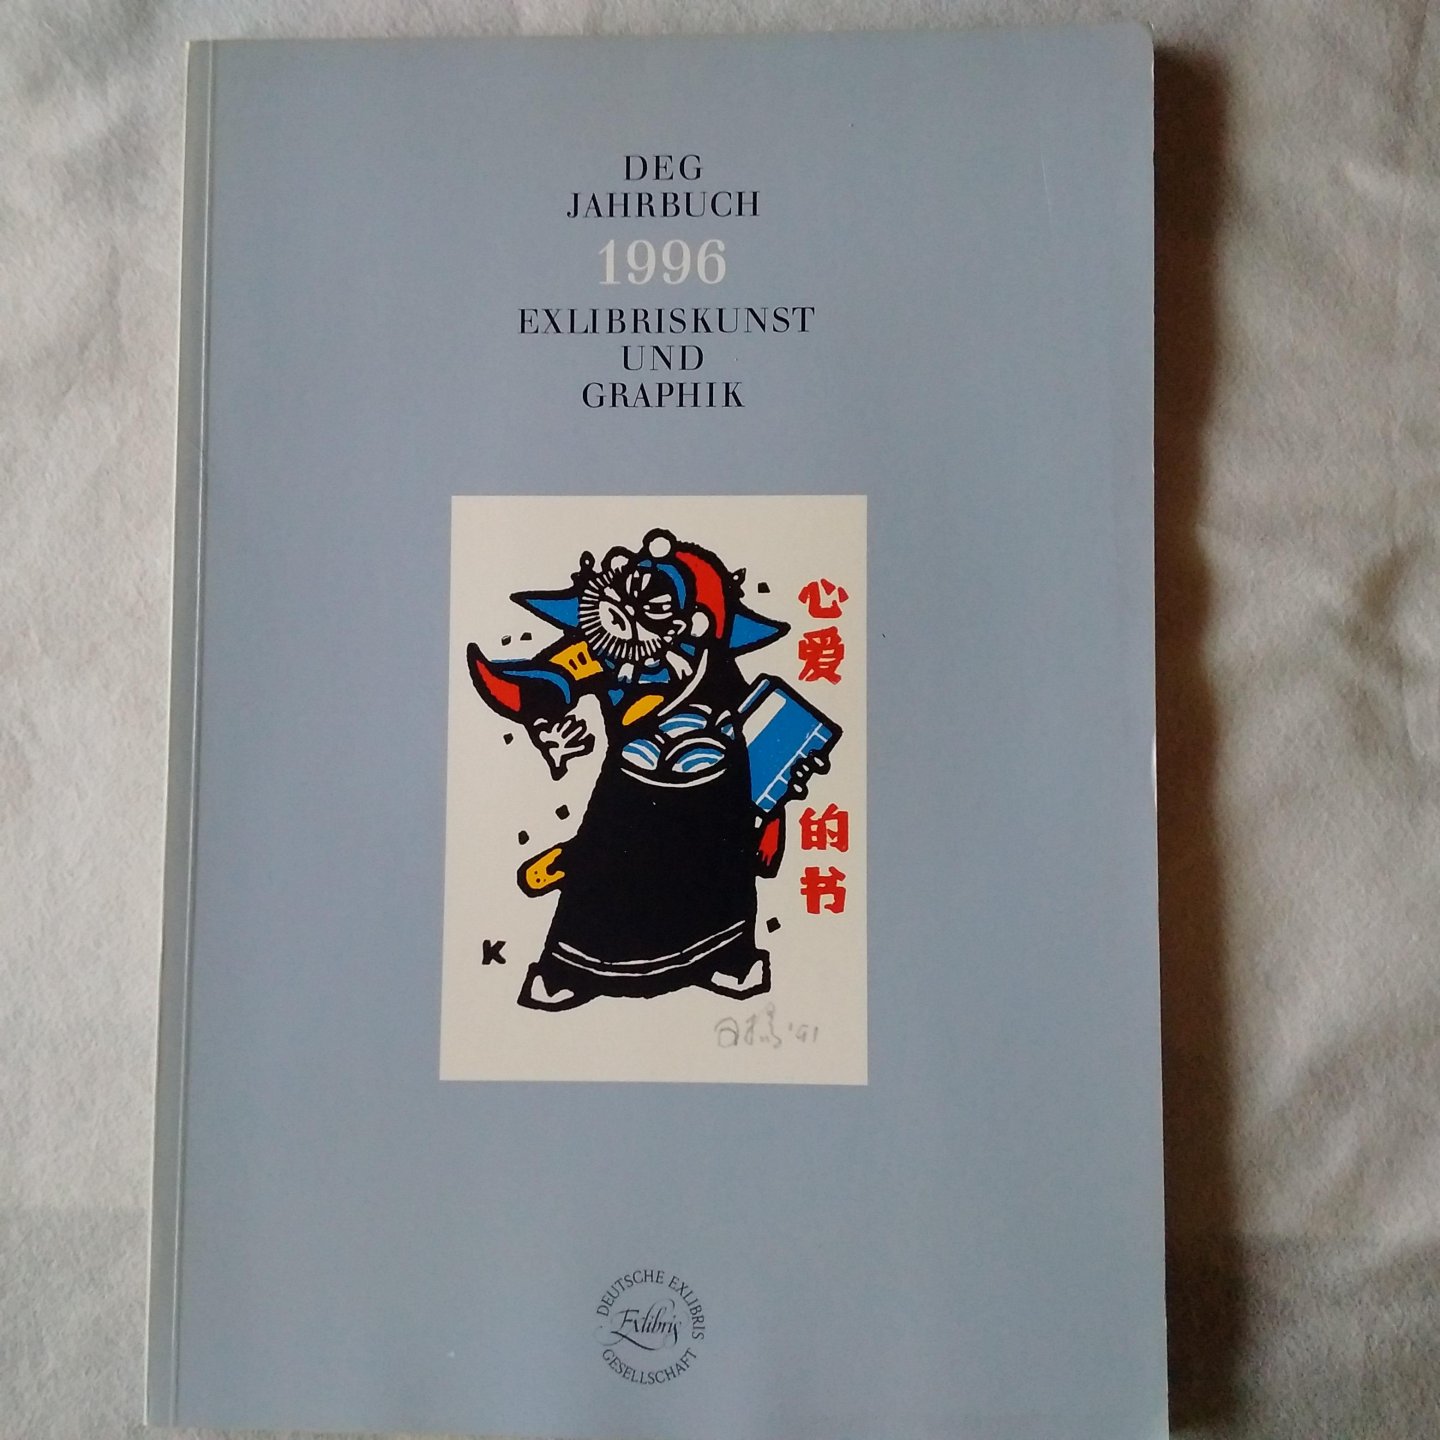 diverse auteurs - DEG Jahrbuch 1996 Exlibriskunst und Graphik